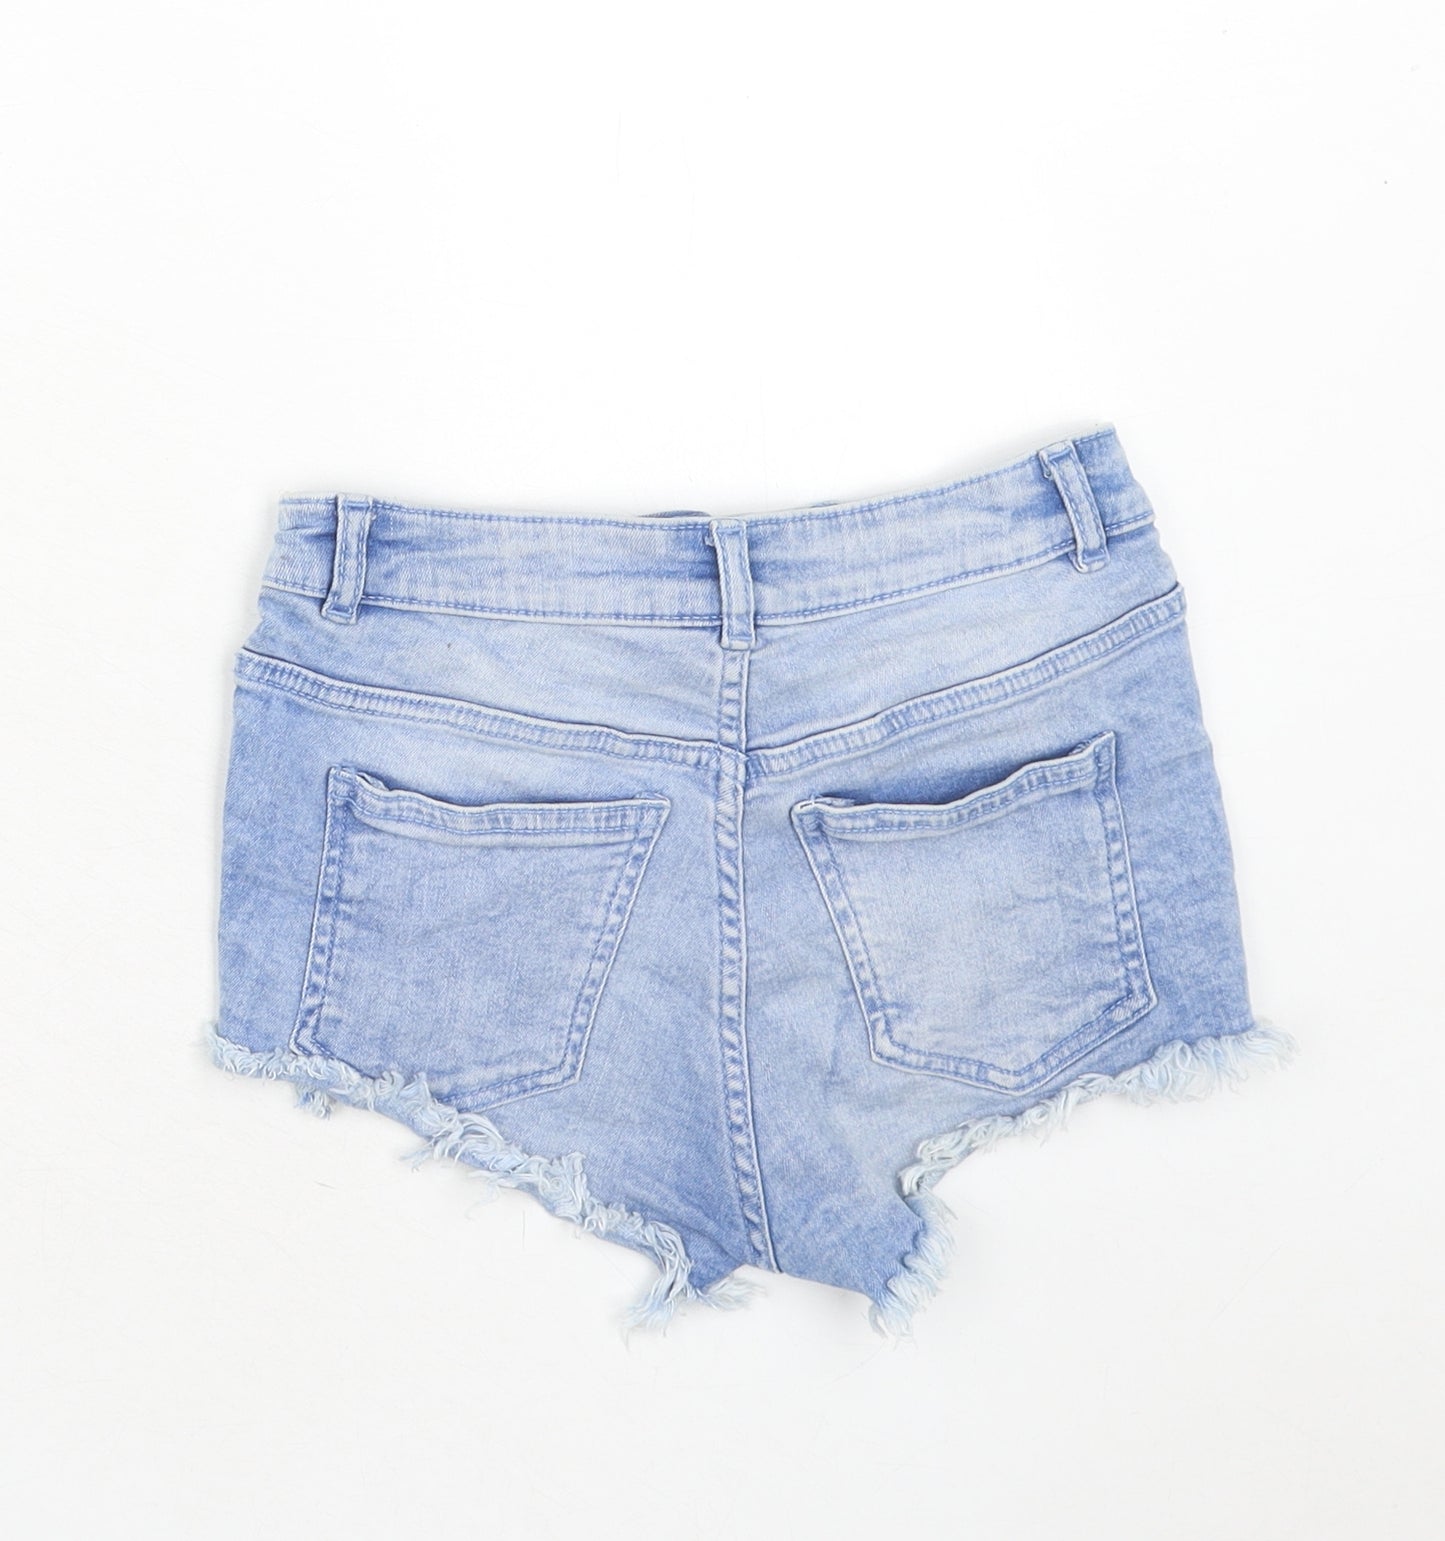 H&M Womens Blue Cotton Cut-Off Shorts Size 4 Regular Zip